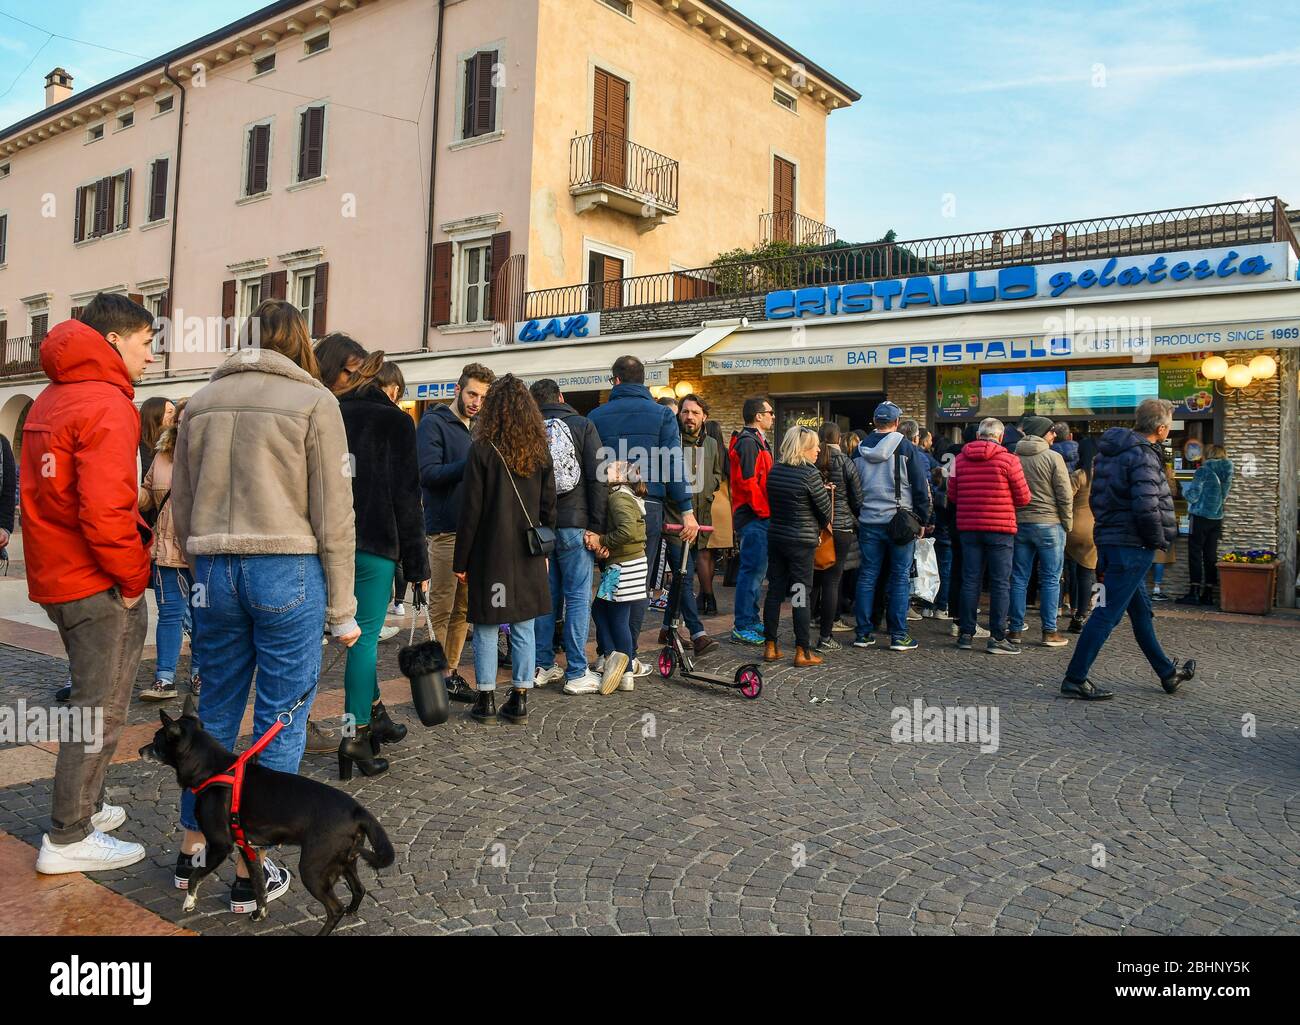 Mucha gente en línea esperando comprar helado fuera de una heladería en el casco antiguo de BARDOLino, Lago Garda, Verona, Veneto, Italia Foto de stock